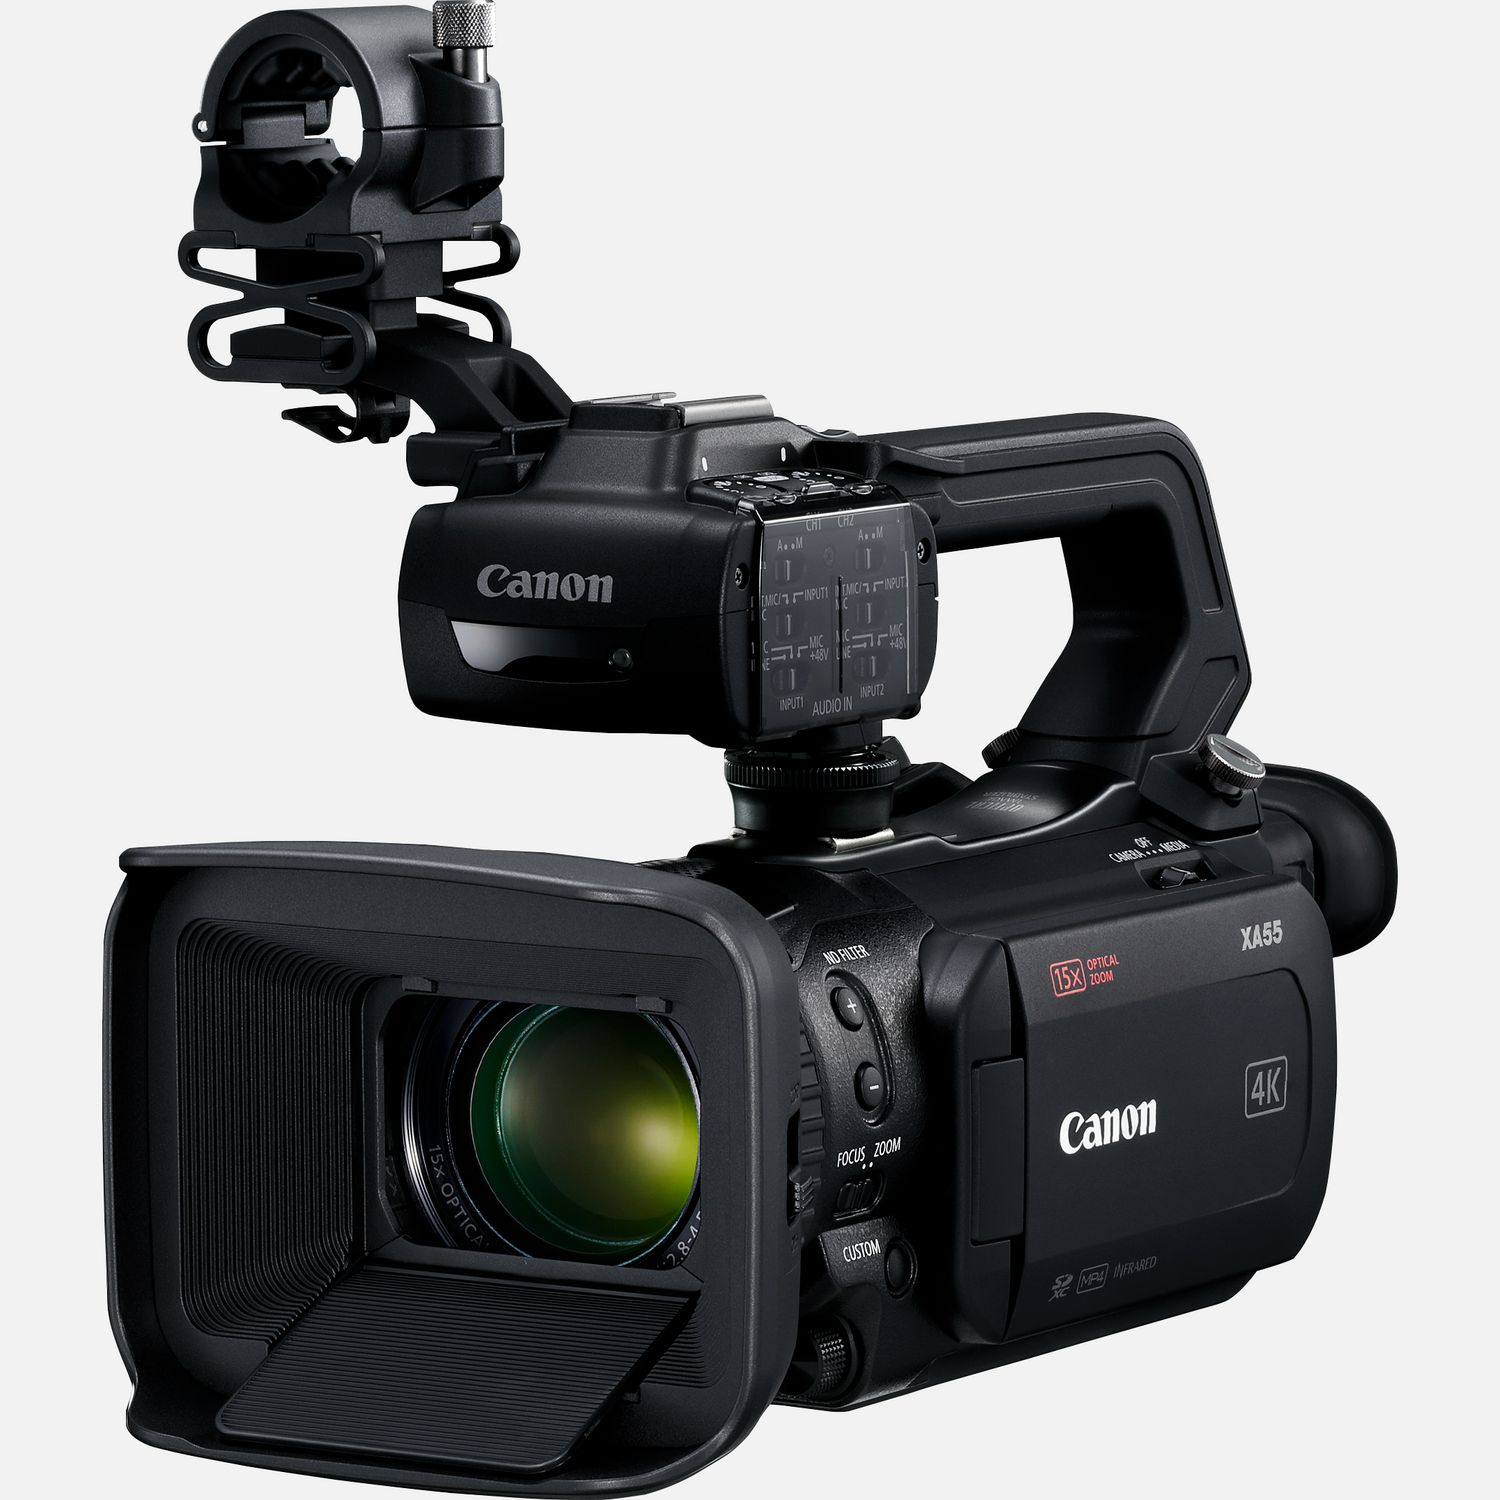 Die XA55 ist ein uerst kompakter und leichter Camcorder  ideal fr 4K-Filmaufnahmen mit vielen Funktionen. Dieser Camcorder eignet sich fr Dokumentarfilme und den Journalismus, und kann unabhngig vom Kenntnisstand von erfahrenen Filmemachern, Studenten und sogar von Anfngern verwendet werden. Mit dem beeindruckenden Dual Pixel CMOS AF, 15fach optischem Zoom, 9-Lamellen-Irisblende, 4K UHD und Full HD liefert er eine exzellente Bildqualitt voller Details. Die XA55 untersttzt die Aufzeichnung in verschiedenen Formaten wie XF-AVC und MP4. XF-AVC 4K UHD 160 Mbps wird mit 25p aufgenommen und FullHD 45 Mbps mit 50p/50i/25p. Darber hinaus sind zwei SD-Kartensteckpltze, 3G-SDI, zwei XLR-Anschlsse und ein niedriger Stromverbrauch nur einige der zustzlichen professionellen Features, die diesen Camcorder ideal fr Filmproduktionen aus der freien Hand machen.  Vorteile      Kompaktes und leichtes Design mit professioneller Funktionalitt einschlielich Infrarot-Modus, mit dem du Videos bei wenig bis gar keinem Umgebungslicht aufnehmen kannst          Das 3,0-Zoll-Display, ein intuitives Men und konfigurierbare Tasten ermglichen eine bersichtliche und einfache Bedienung          Der groe 1,0-Zoll-Typ CMOS-Sensor und der DV6Prozessor ermglichen 4K-UHD- und FullHD-Videoaufnahmen und sorgen gleichzeitig fr eine hohe Empfindlichkeit und rauscharme Bilder          Eine 9-Lamellen-Irisblende und ein ND-Filter ermglichen ein schnes Bokeh bei gleichzeitiger geforderter Schrfentiefe          Der enorme Brennweitenbereich von 25,5-382,5mm, 4K-Video, 15fach Zoom und Super-UD-Linsen tragen zur enormen Bildqualitt des Camcorders bei          Die 5-Achsen-Bildstabilisierung hilft beim Filmen unterwegs und bei Aufnahmen aus der freien Hand  ideal fr News- und Dokumentaraufnahmen unterwegs          Die XA55 untersttzt diverse Aufzeichnungsformate einschlielich XF-AVC und MP4, und ermglicht mit zwei SD-Karten-Steckpltzen die gleichzeitige Backup- und die fortlaufende Aufnahme          Dual Pixel CMOS AF und Touch & Drag-AF ermglichen eine intuitive Fokussteuerung          3G-SDI, zwei XLR-Anschlsse, 4-Kanal-Linear-PCM und geringer Stromverbrauch sind weitere professionelle Features          Dank eines 3,5-mm-Stereo-Mini-Eingangs und eines integrierten Stereomikrofons kann auch der Ton problemlos aufgenommen werden, den du ber einen Kopfhreranschluss per Kopfhrer berwachen kannst          Lieferumfang       XA55 Camcorder         HDU-3 Tragegriff         Akku BP-820         Kompakt-Netzteil CA-570         Fernbedienung WL-D89         Mikrofonhalter         Streulichtblende mit integriertem Objektivschutz         Netzkabel         Anleitungen              Technische Daten              Zur Aufnahme von 4K UHD, 25p XF-AVC mit bis zu 160 Mbps oder MP4 mit bis zu 150 Mbps                1,0-Zoll-Typ CMOS-Sensor                25,5-382,5mm 4K-Ultraweitwinkel-Zoomobjektiv                Optimierter optischer 5-Achsen-Bildstabilisator mit Dynamic IS                Przise und zuverlssig mit Gesichtserkennung                Verwendet den 4K UHD-Sensor, um erstklassige Full HD-Bilder zu generieren                Professionelle Codecs zur effizienten Aufzeichnung von hochwertigen 4K- und FullHD-Videos                Der Infrarot-Modus ermglicht hochwertige Videoaufnahmen bei extrem wenig bis gar keinem Umgebungslicht          Alle technischen Daten zeigen